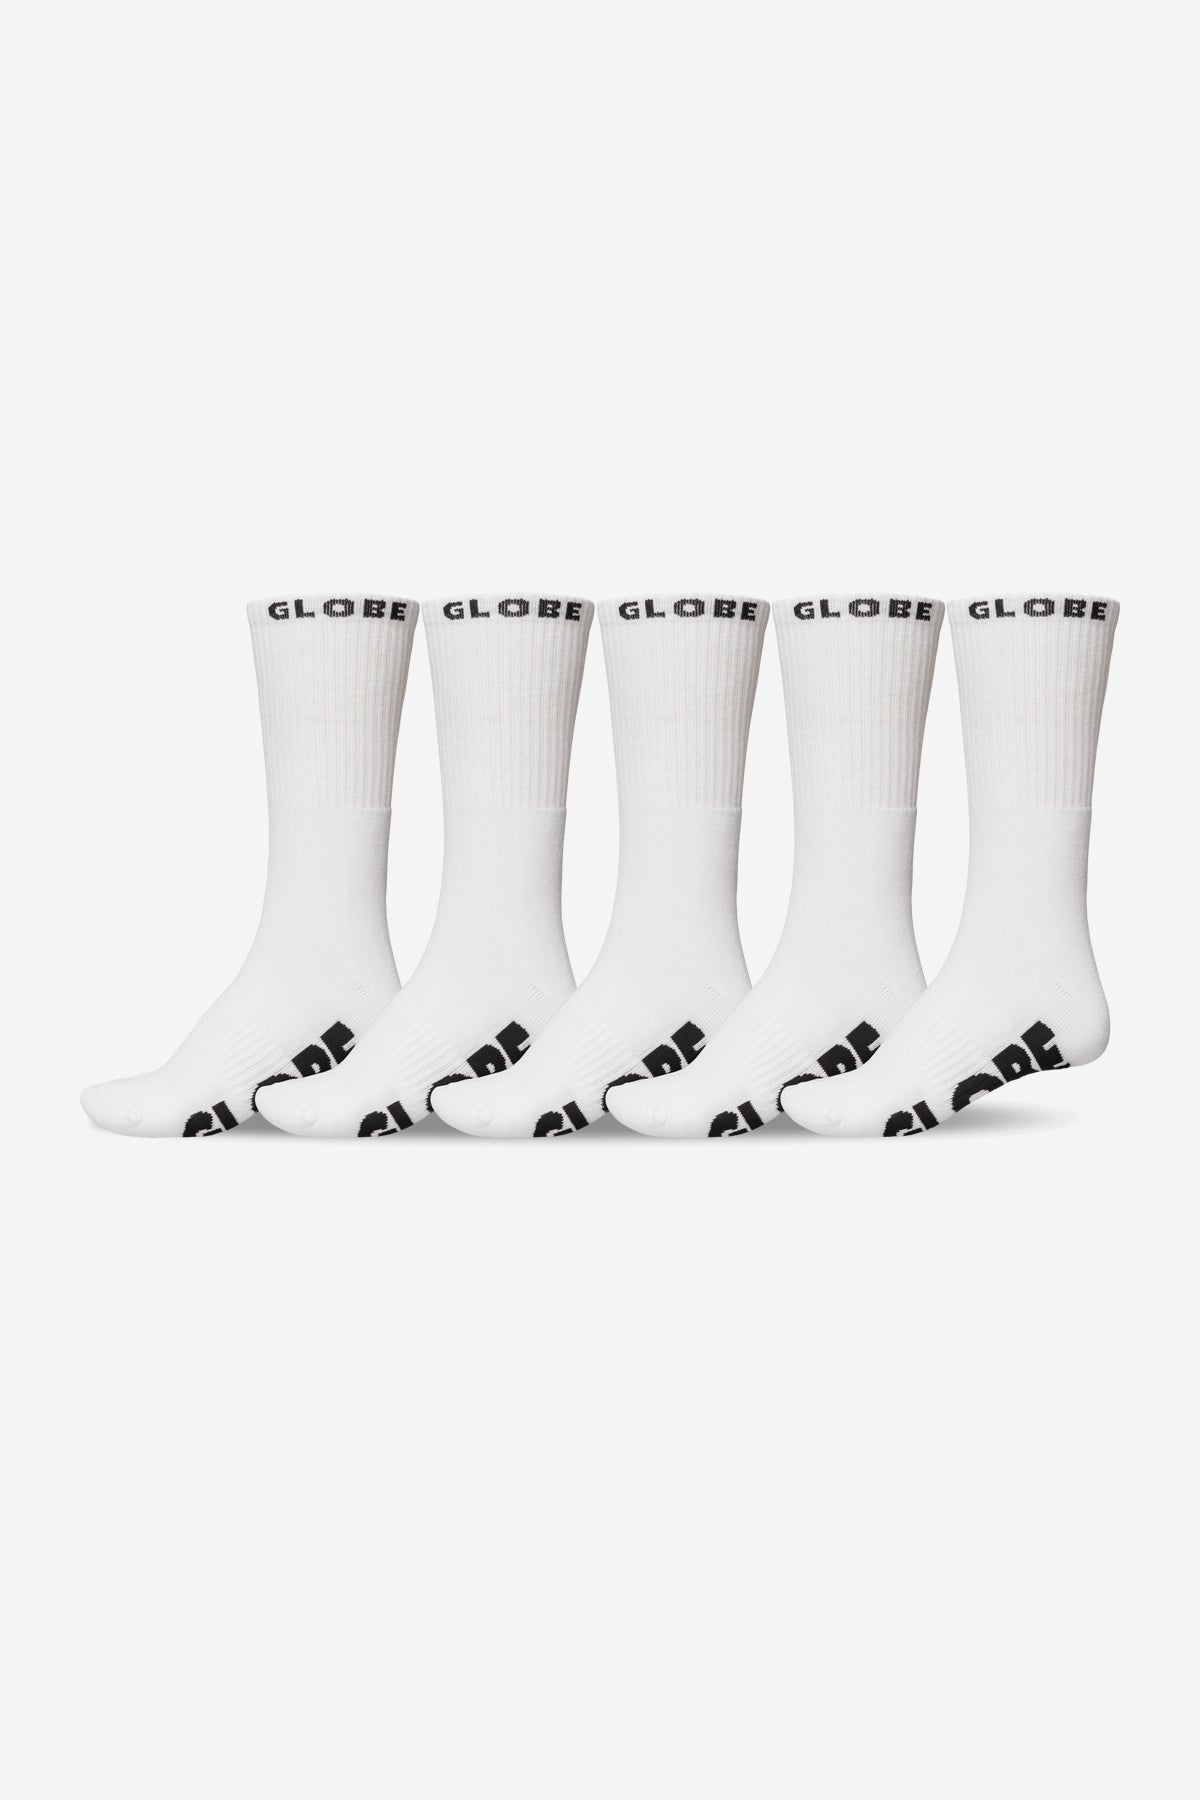 Whiteout Socke 5er Pack